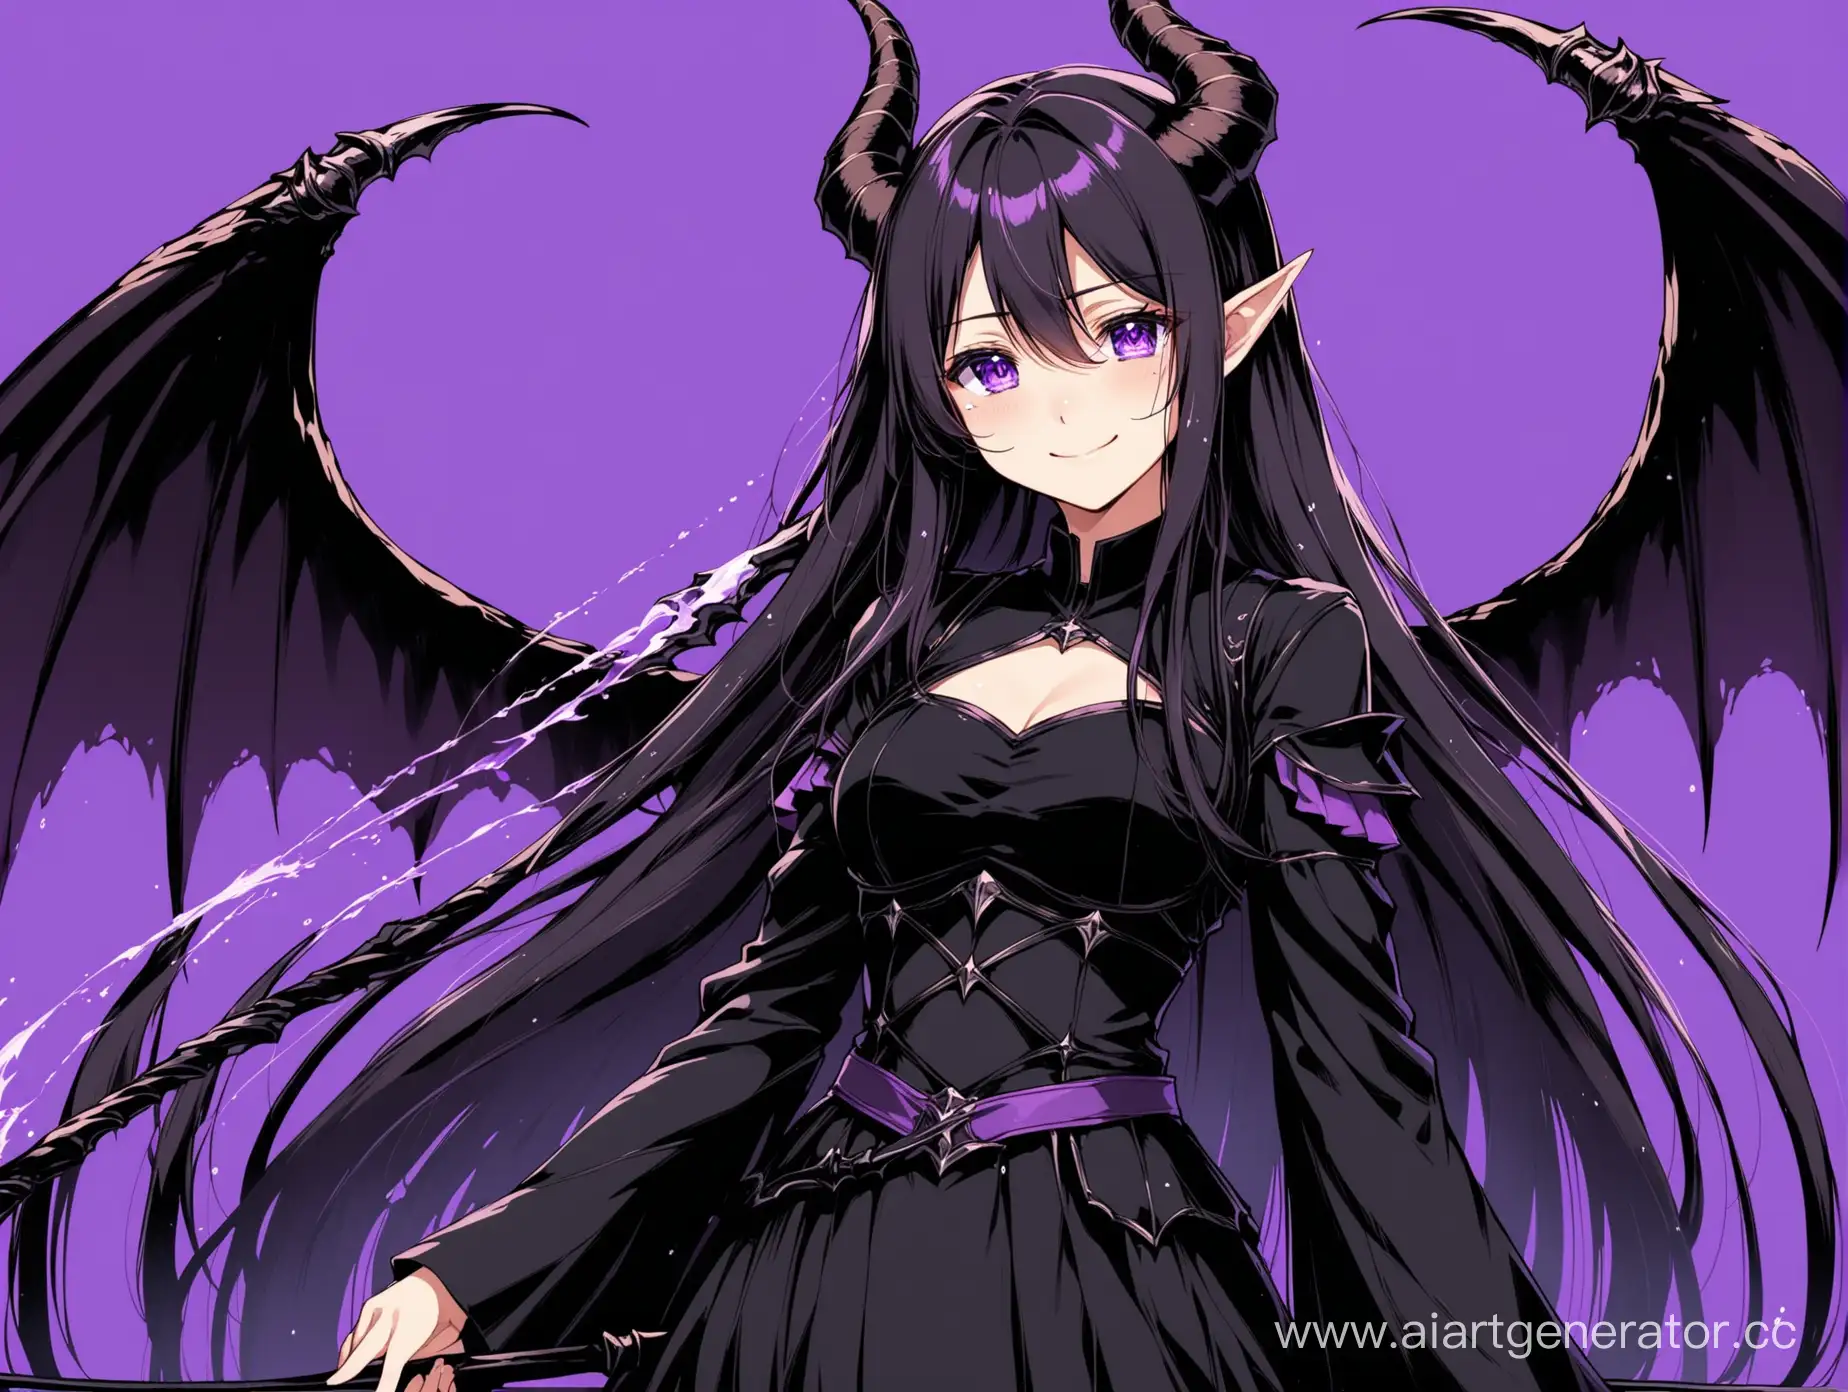 Аниме девушка по пояс, в чёрной одежде, улыбается, на глазах слёзы, с крыльями и рожками, в правой руке чёрно-фиолетовая коса, фиолетовый фон, длинные волосы.